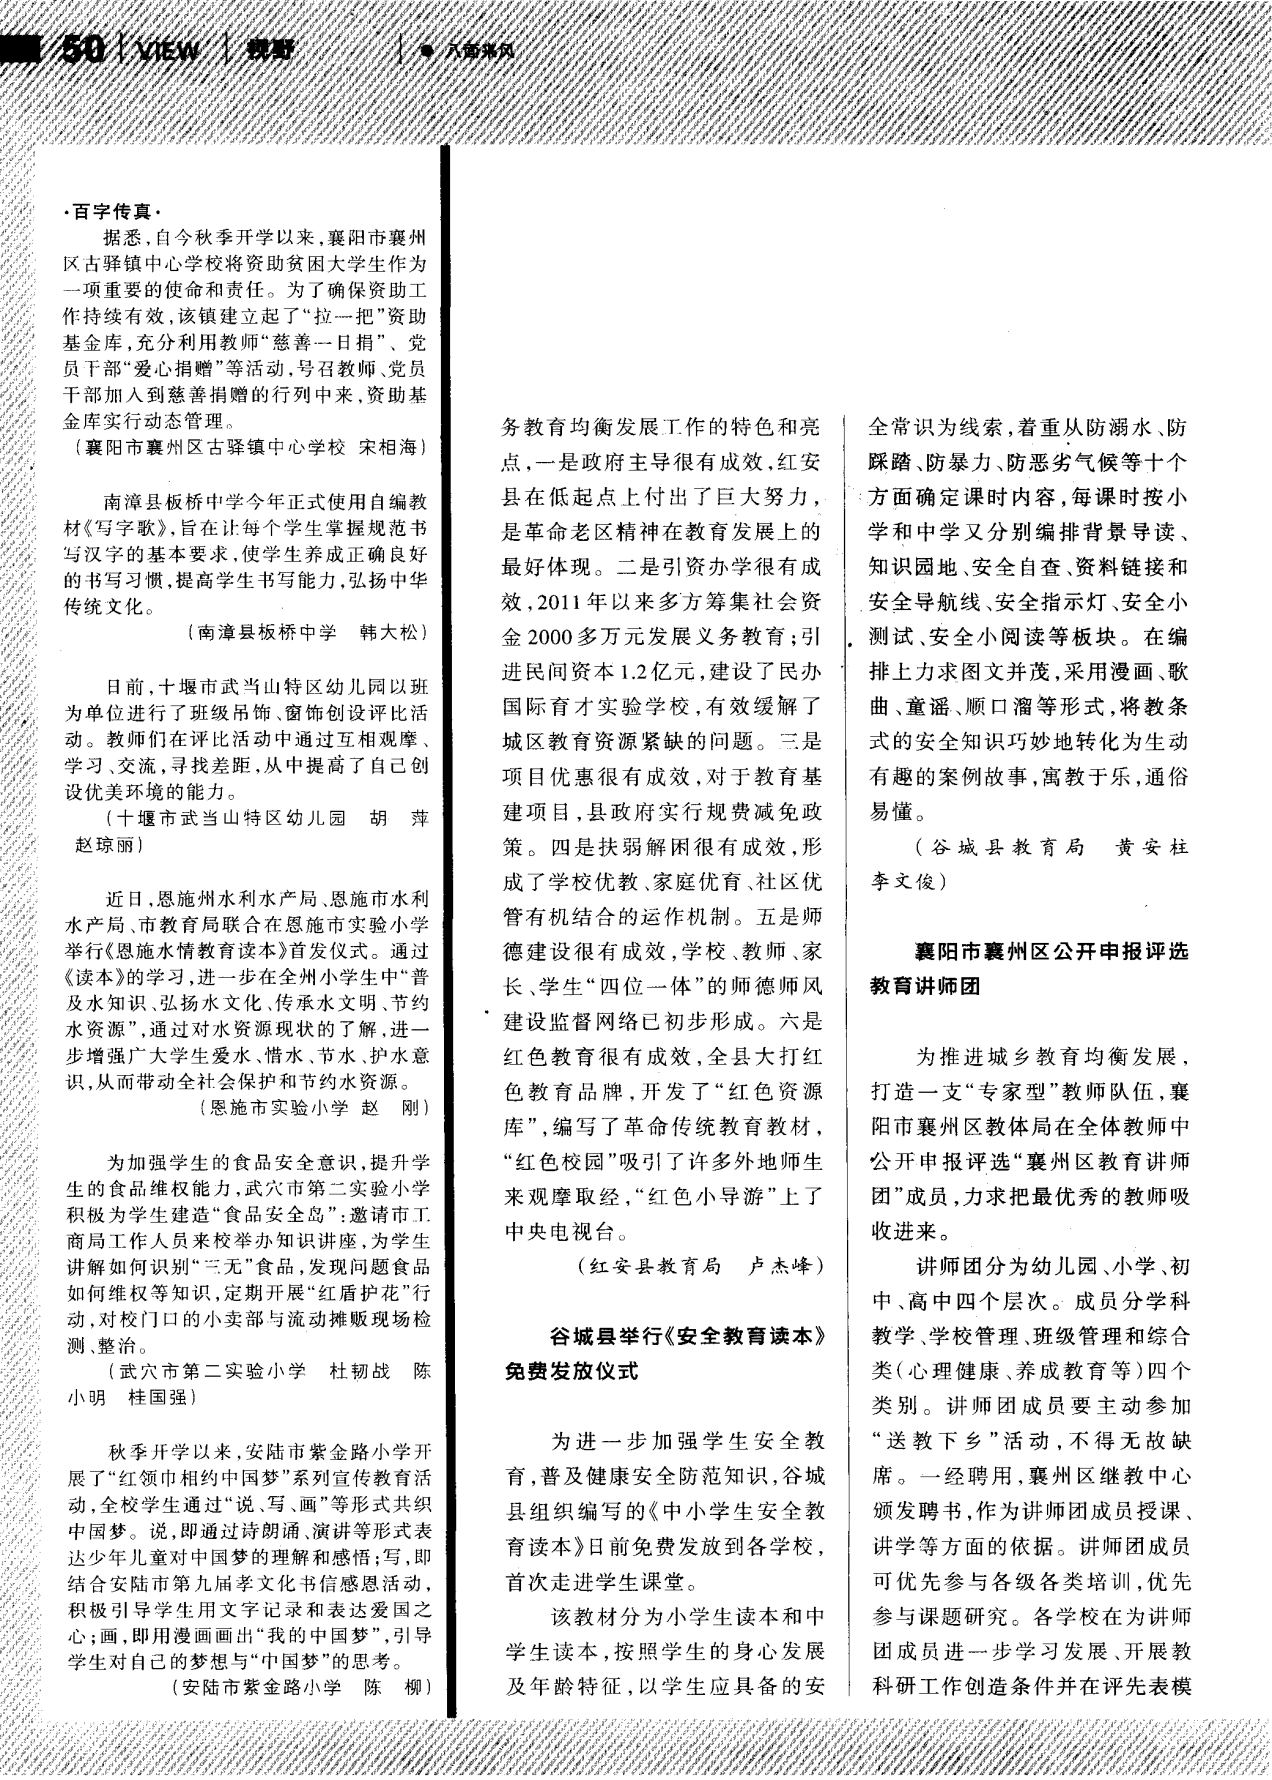 襄阳市襄州区公开申报评选教育讲师团